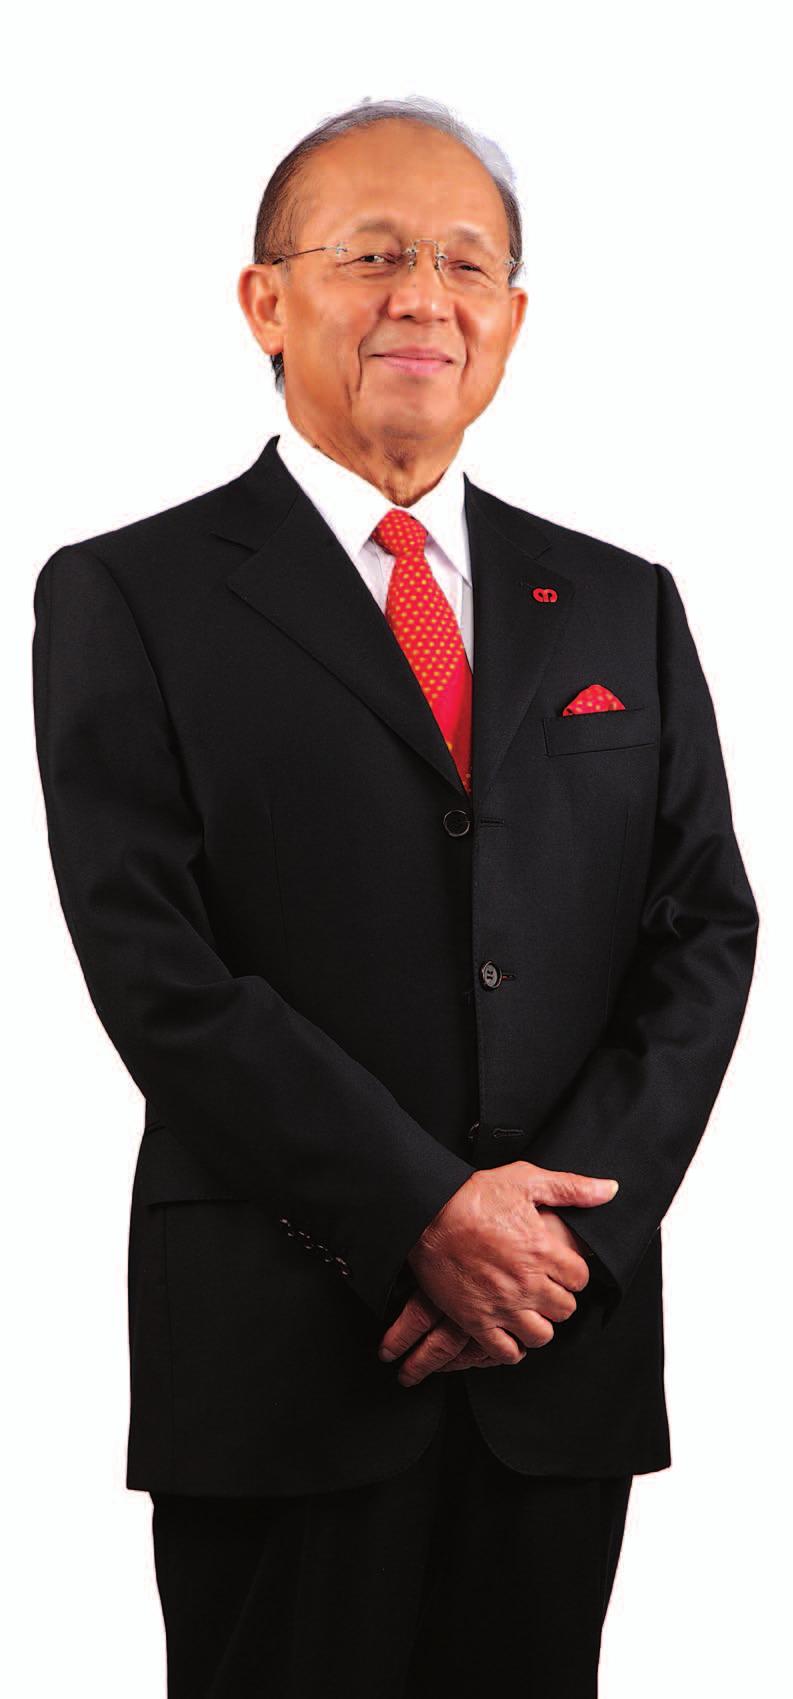 24 AMMB Holdings Berhad (223035-V) Laporan Tahunan 2013 Profil Para Pengarah Y Bhg Tan Sri Azman Hashim, seorang warganegara Malaysia berusia 74 tahun, telah dilantik menganggotai Lembaga Pengarah